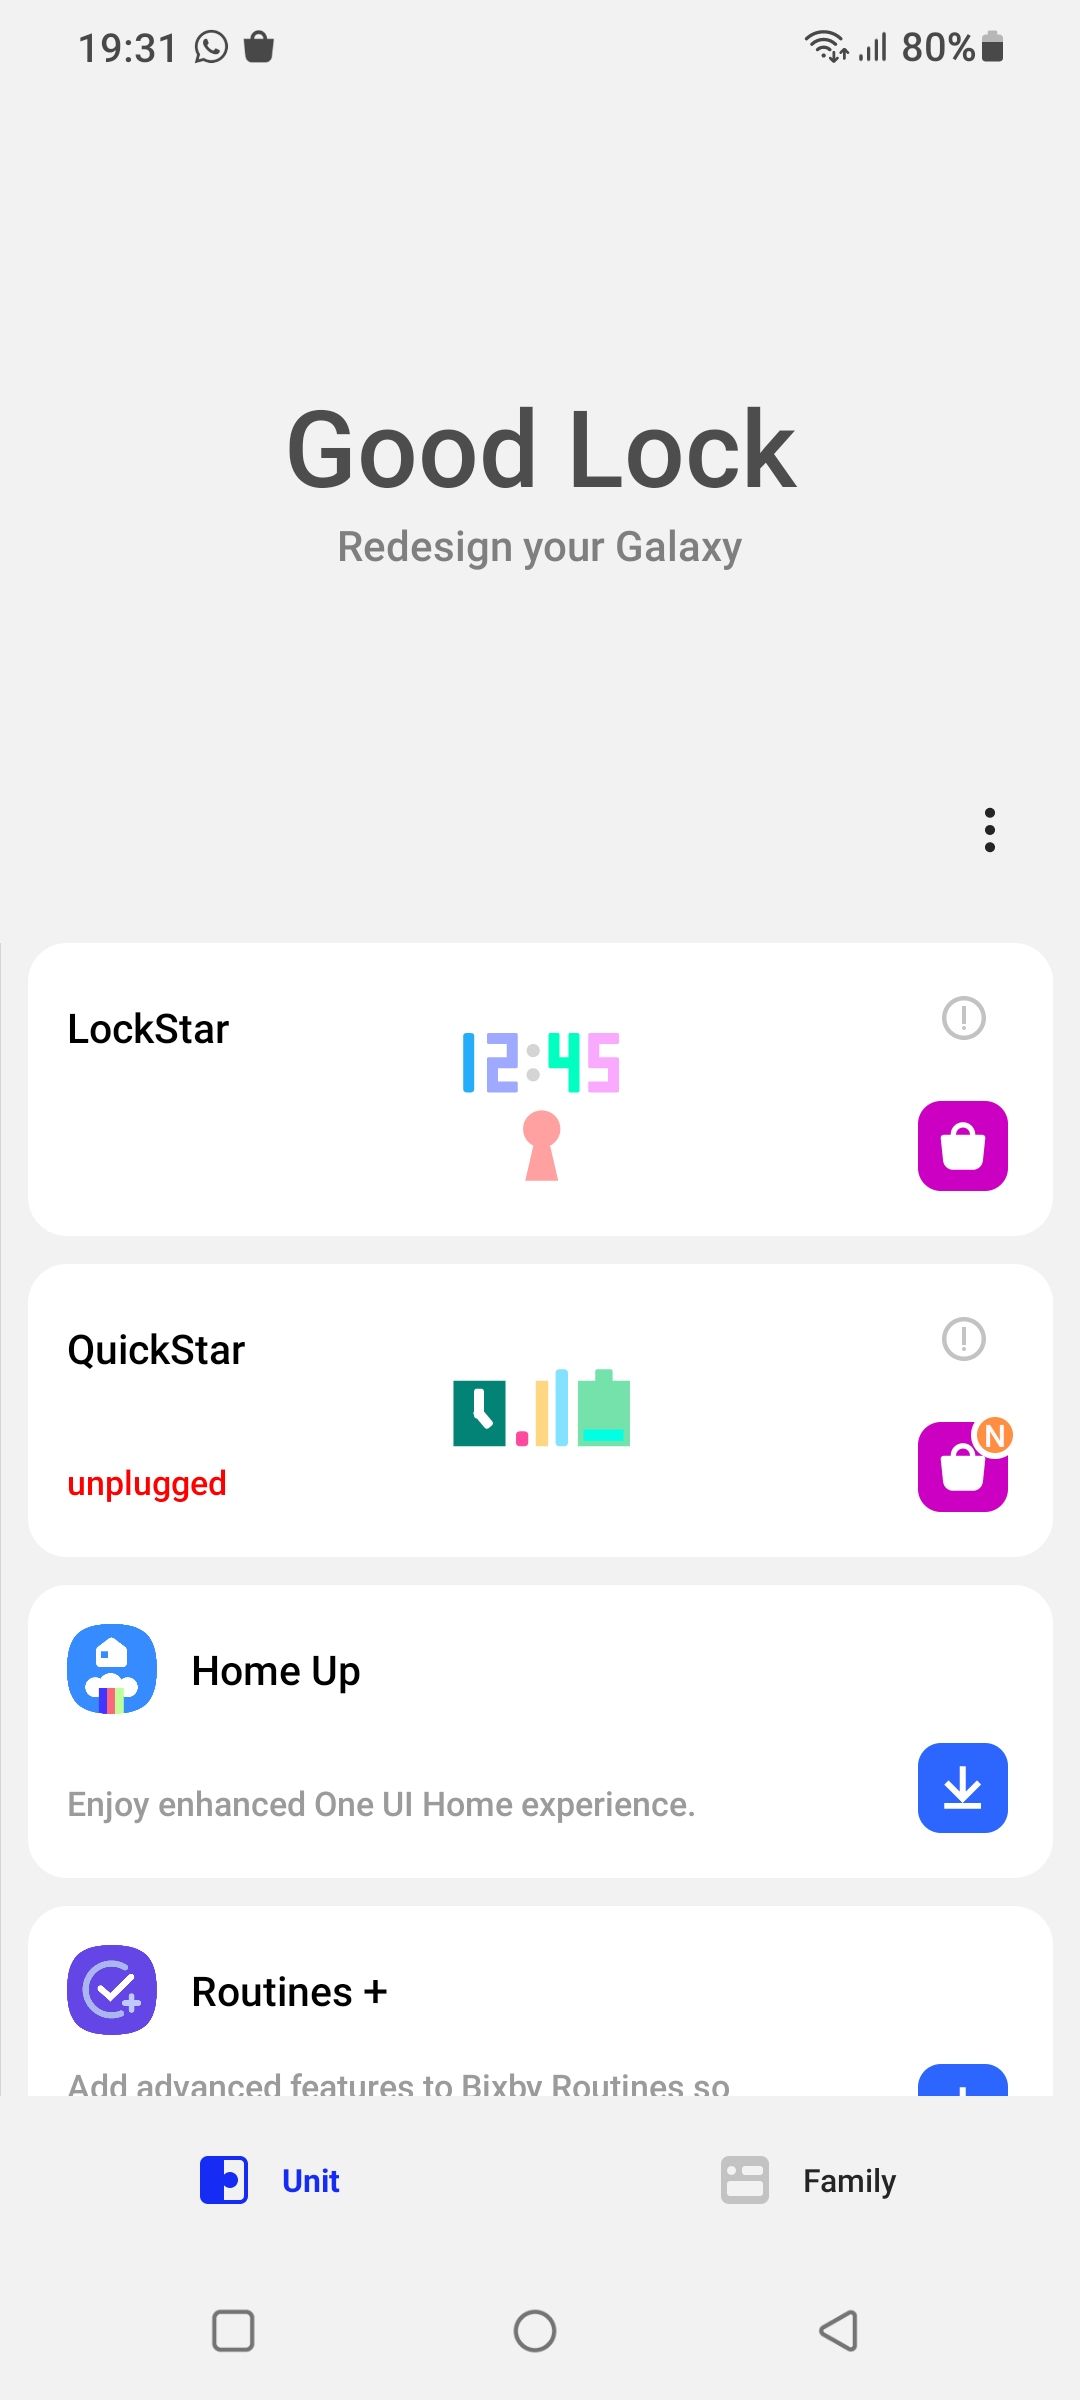 Good Lock Quickstar - Samsung Community